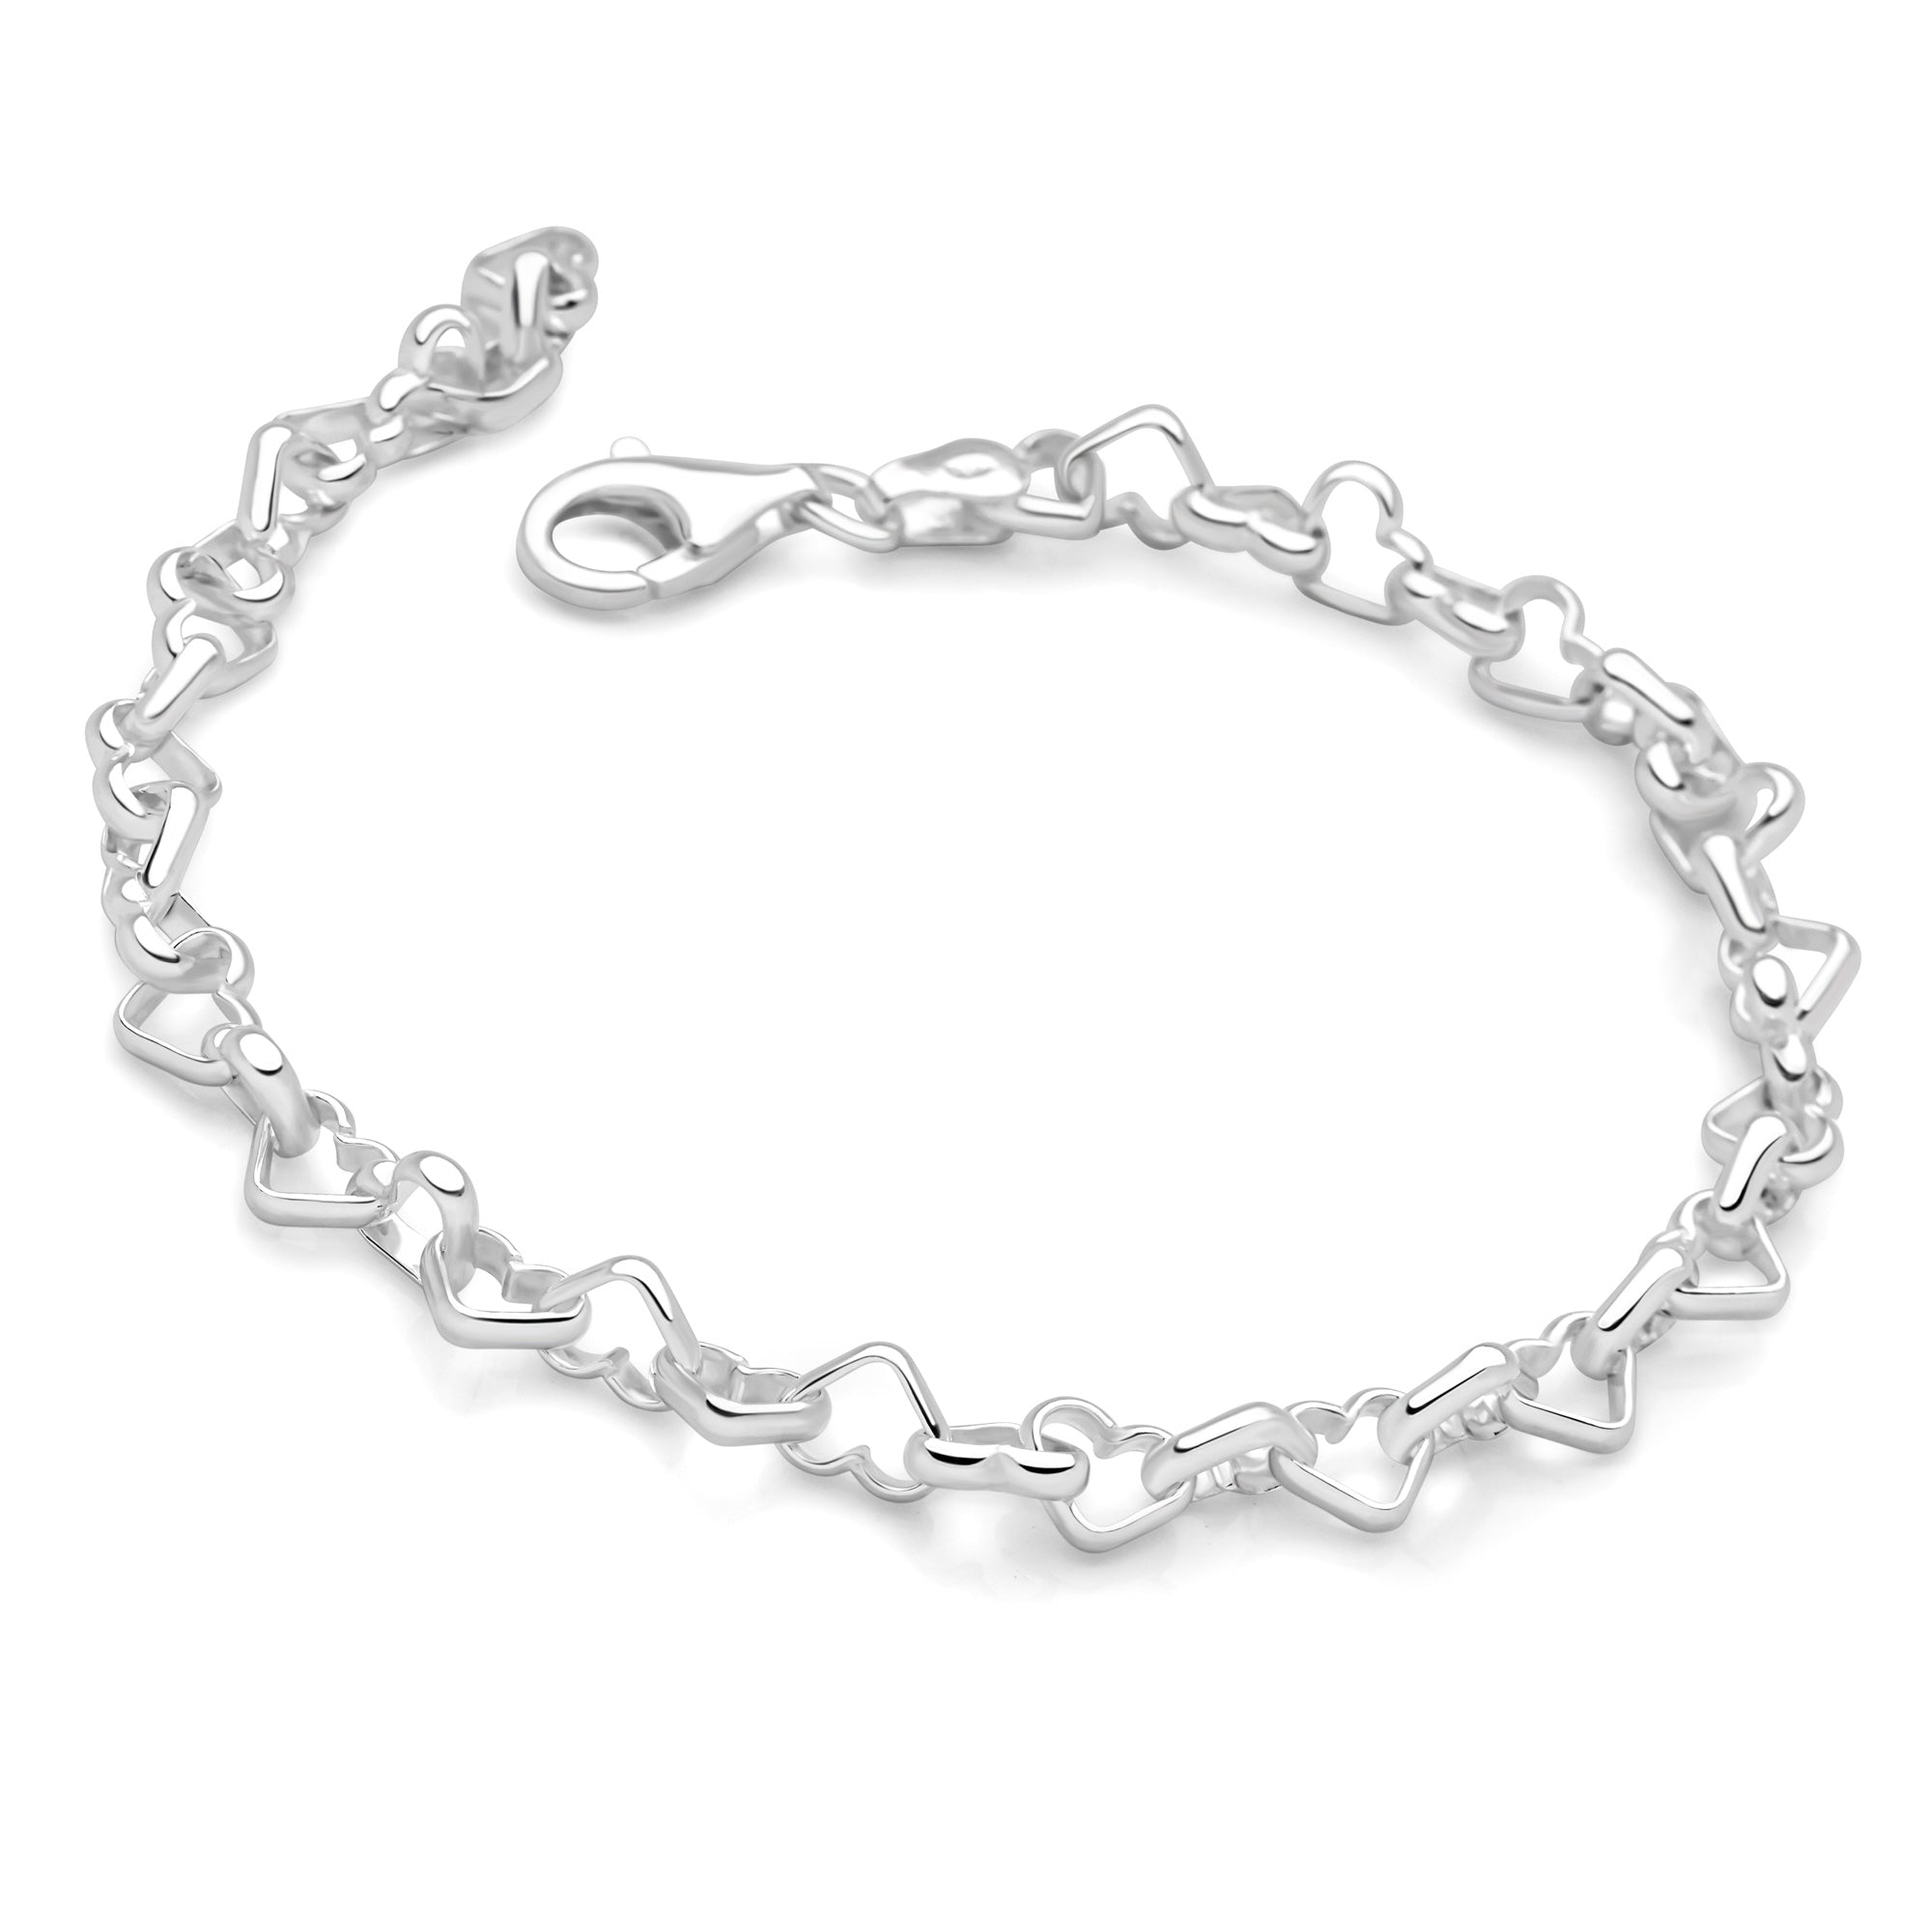 Linked By Love Bracelet | Silver Bracelets | BRC1756